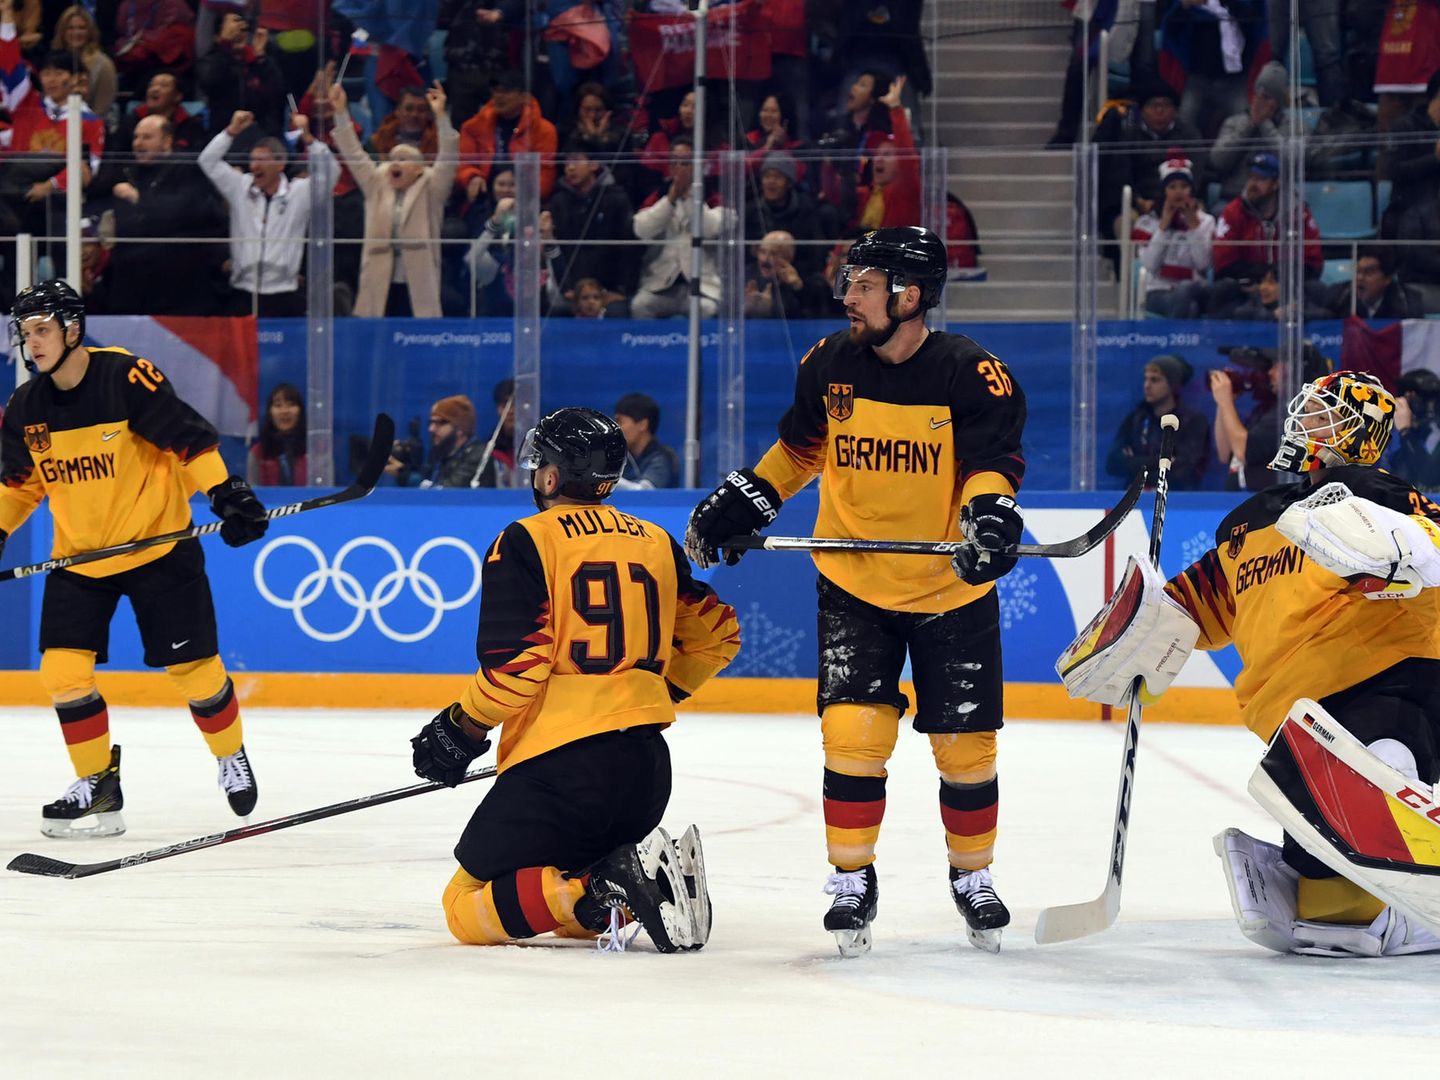 Eishockey bei Olympia Deutschland verpasst Gold nach Verlängerung